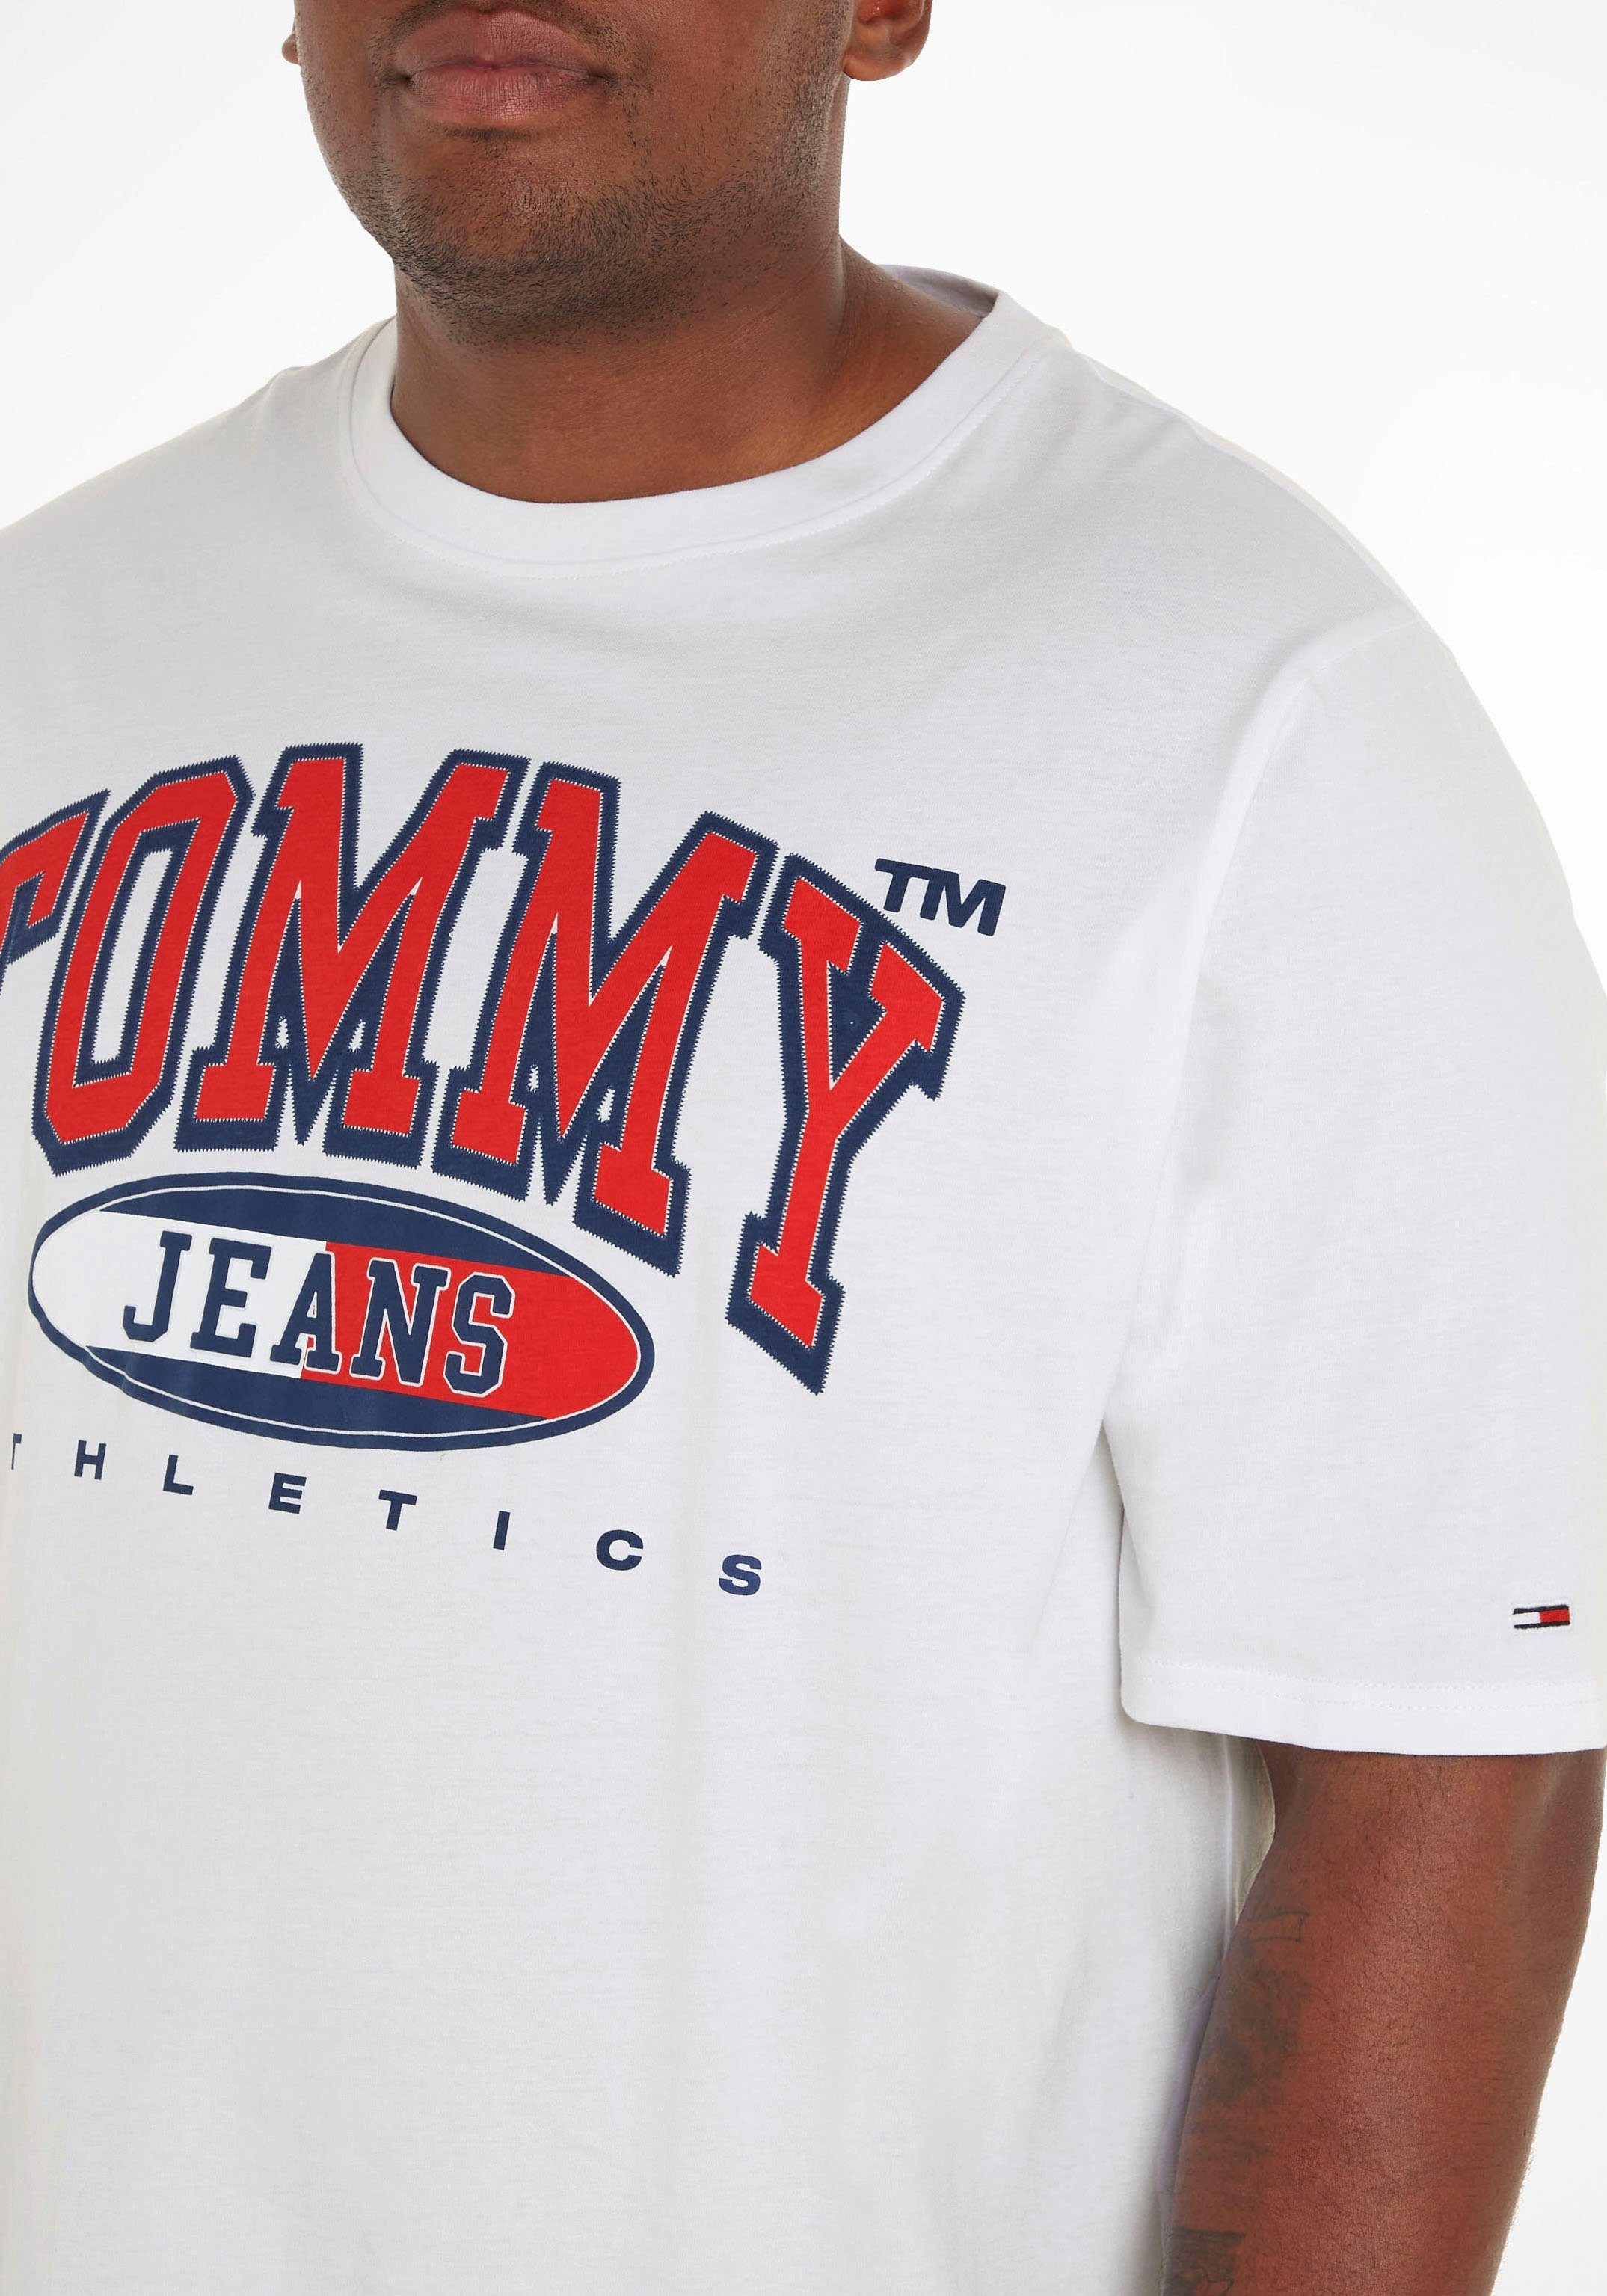 PLUS der GRAPHIC auf Tommy T-Shirt Brust mit ESSENTIAL Jeans Plus Print TEE TJM White